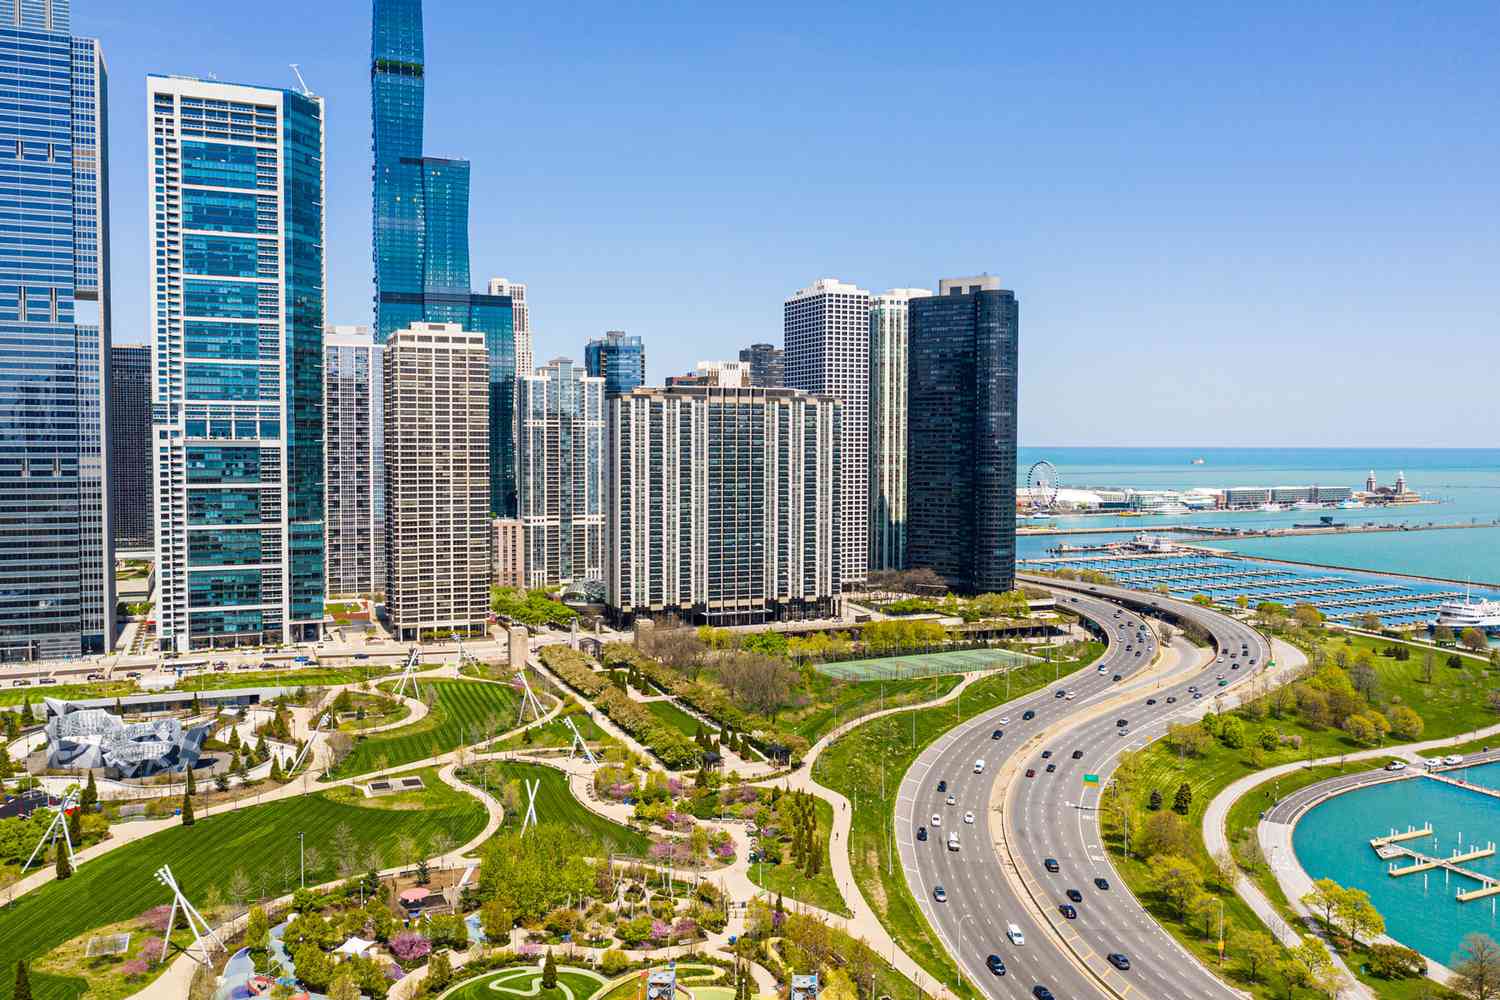 Vue aérienne du centre-ville de Chicago avec les parcs de la ville et le lac en vue